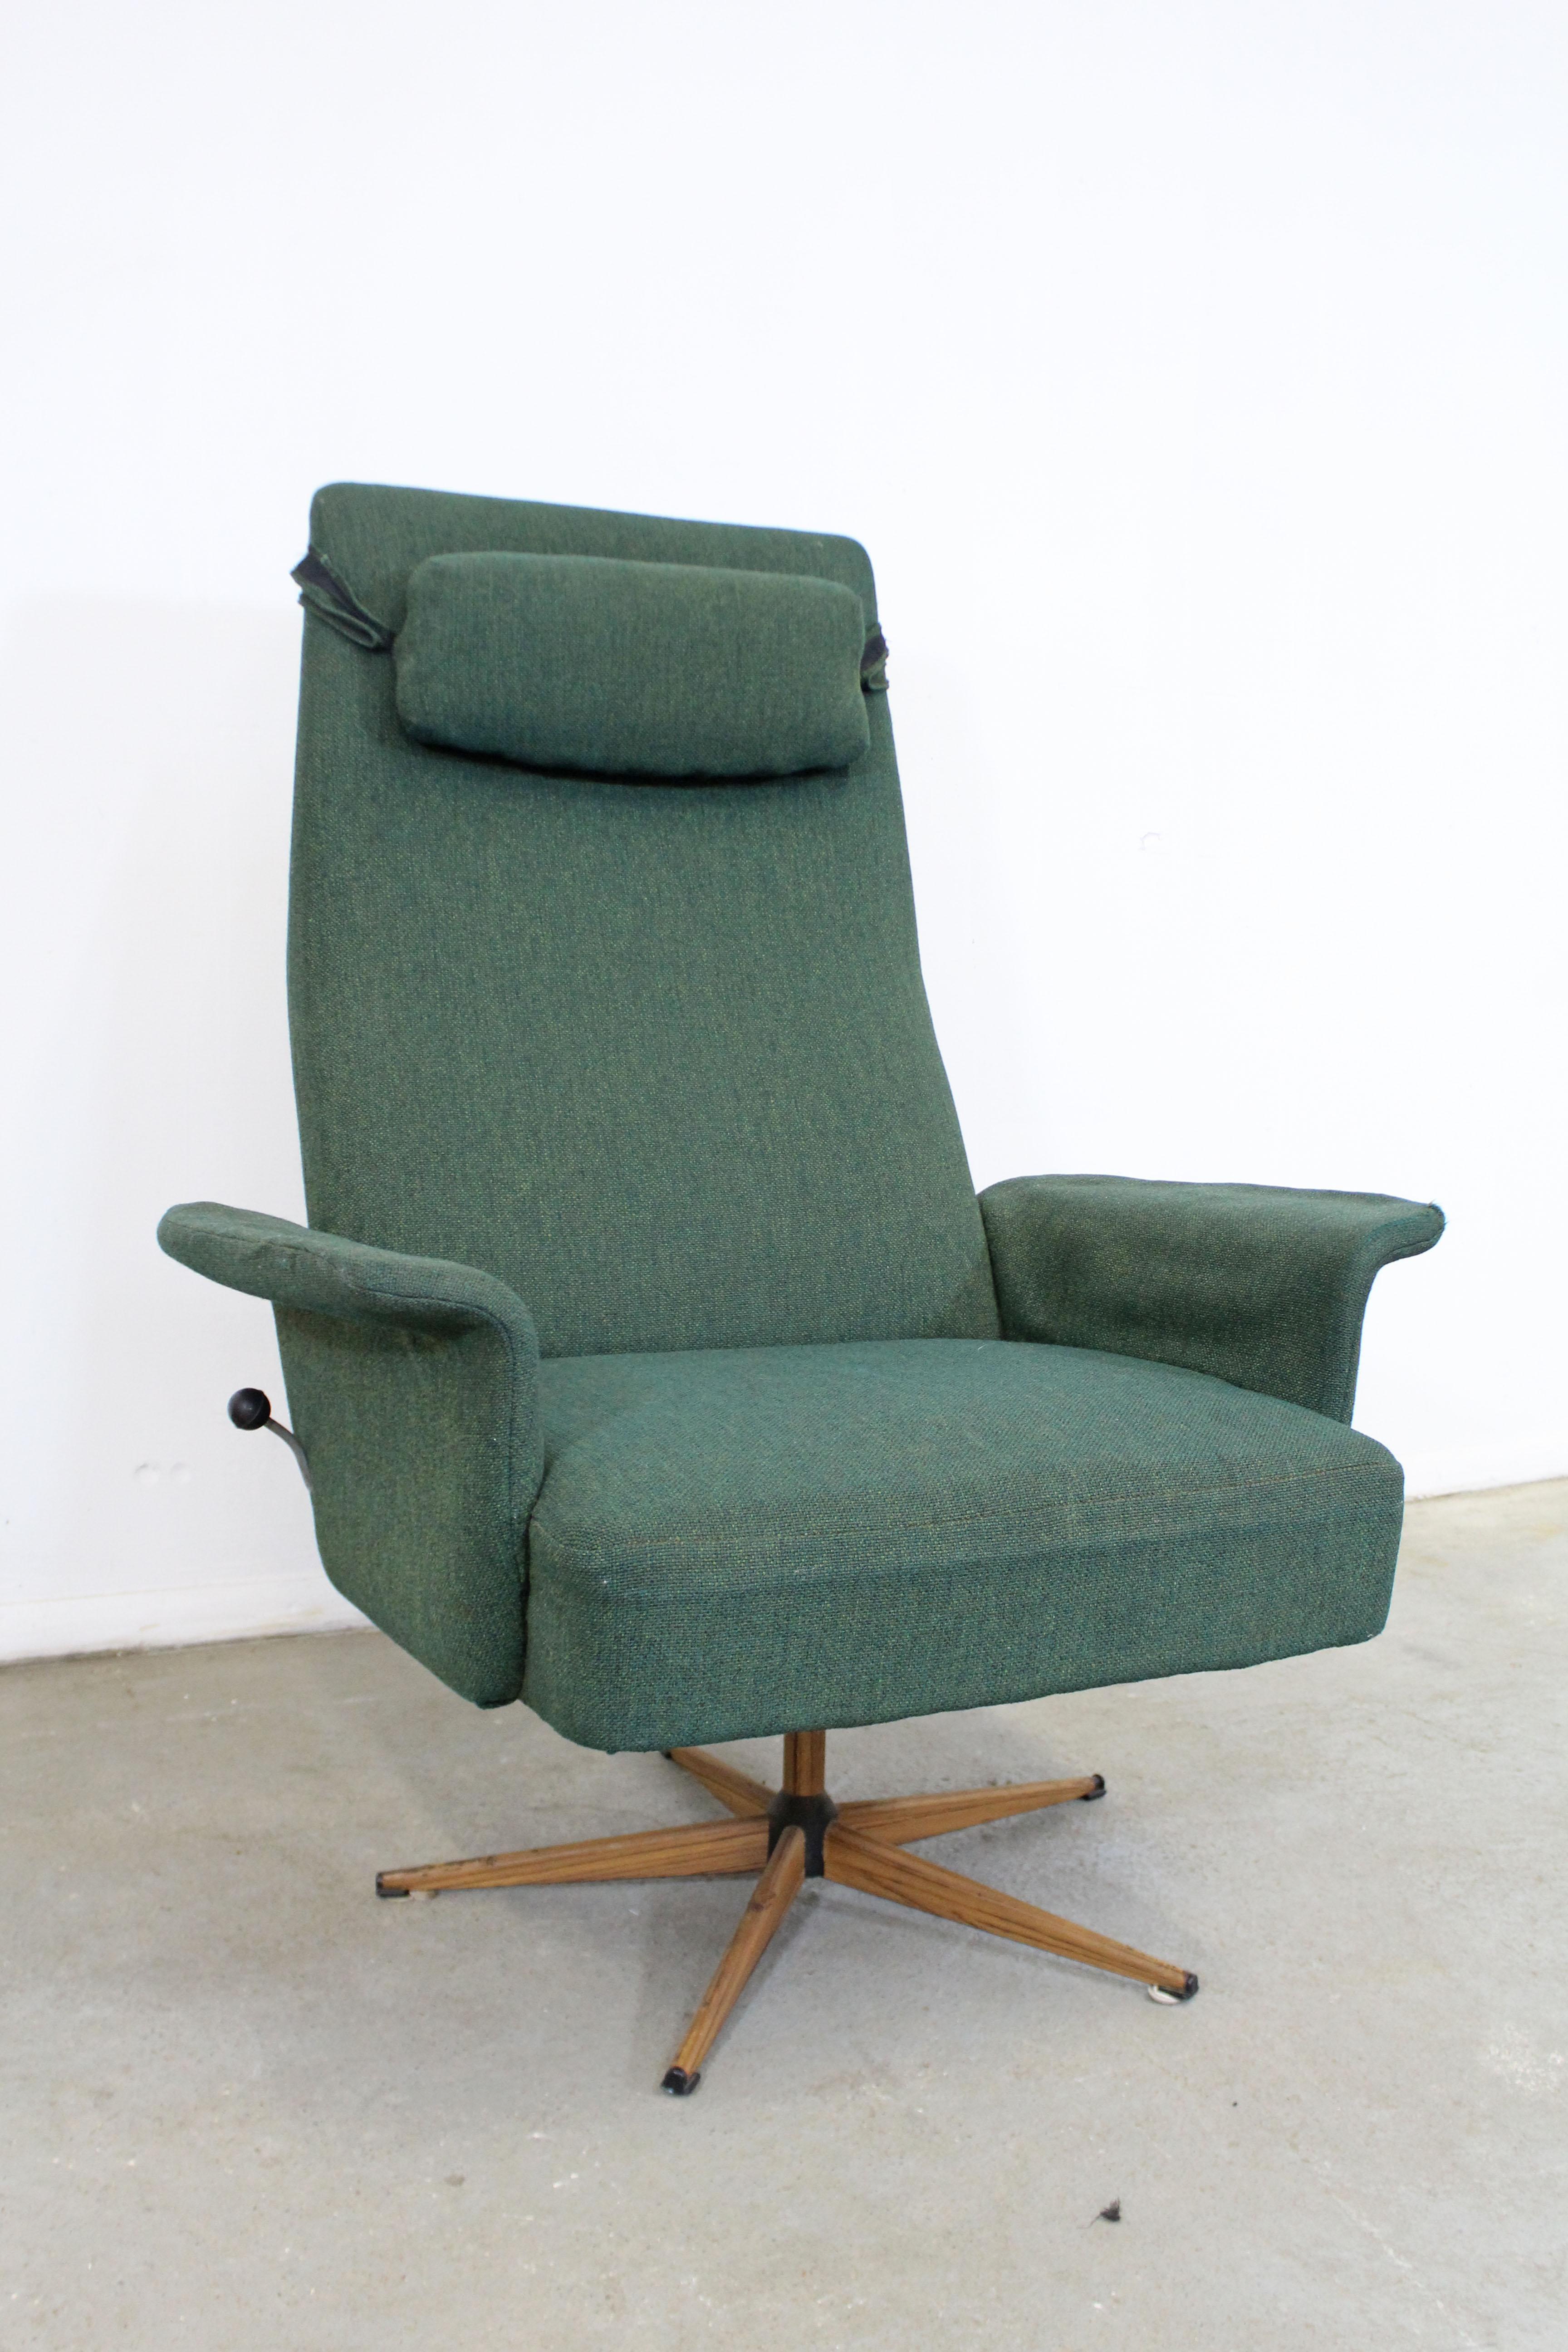 Quelle trouvaille. Nous vous proposons un fauteuil de salon de style moderne danois avec une tapisserie verte qui pivote et se balance. Il est doté d'un appui-tête amovible et d'un levier latéral pour verrouiller le fauteuil en place. Il est en bon